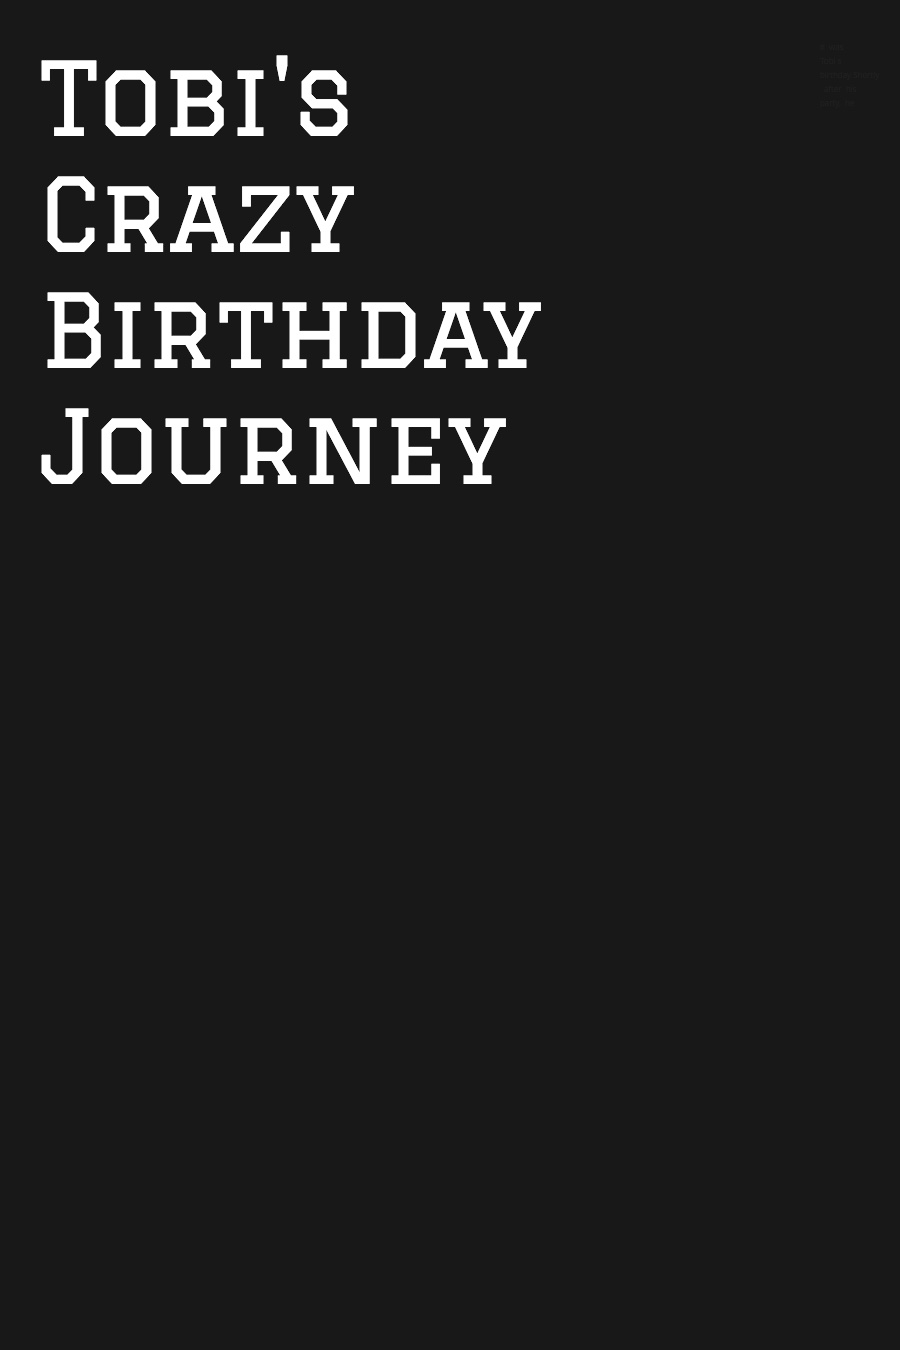 Tobi’s Crazy Birthday Journey by Tobias Tobi M